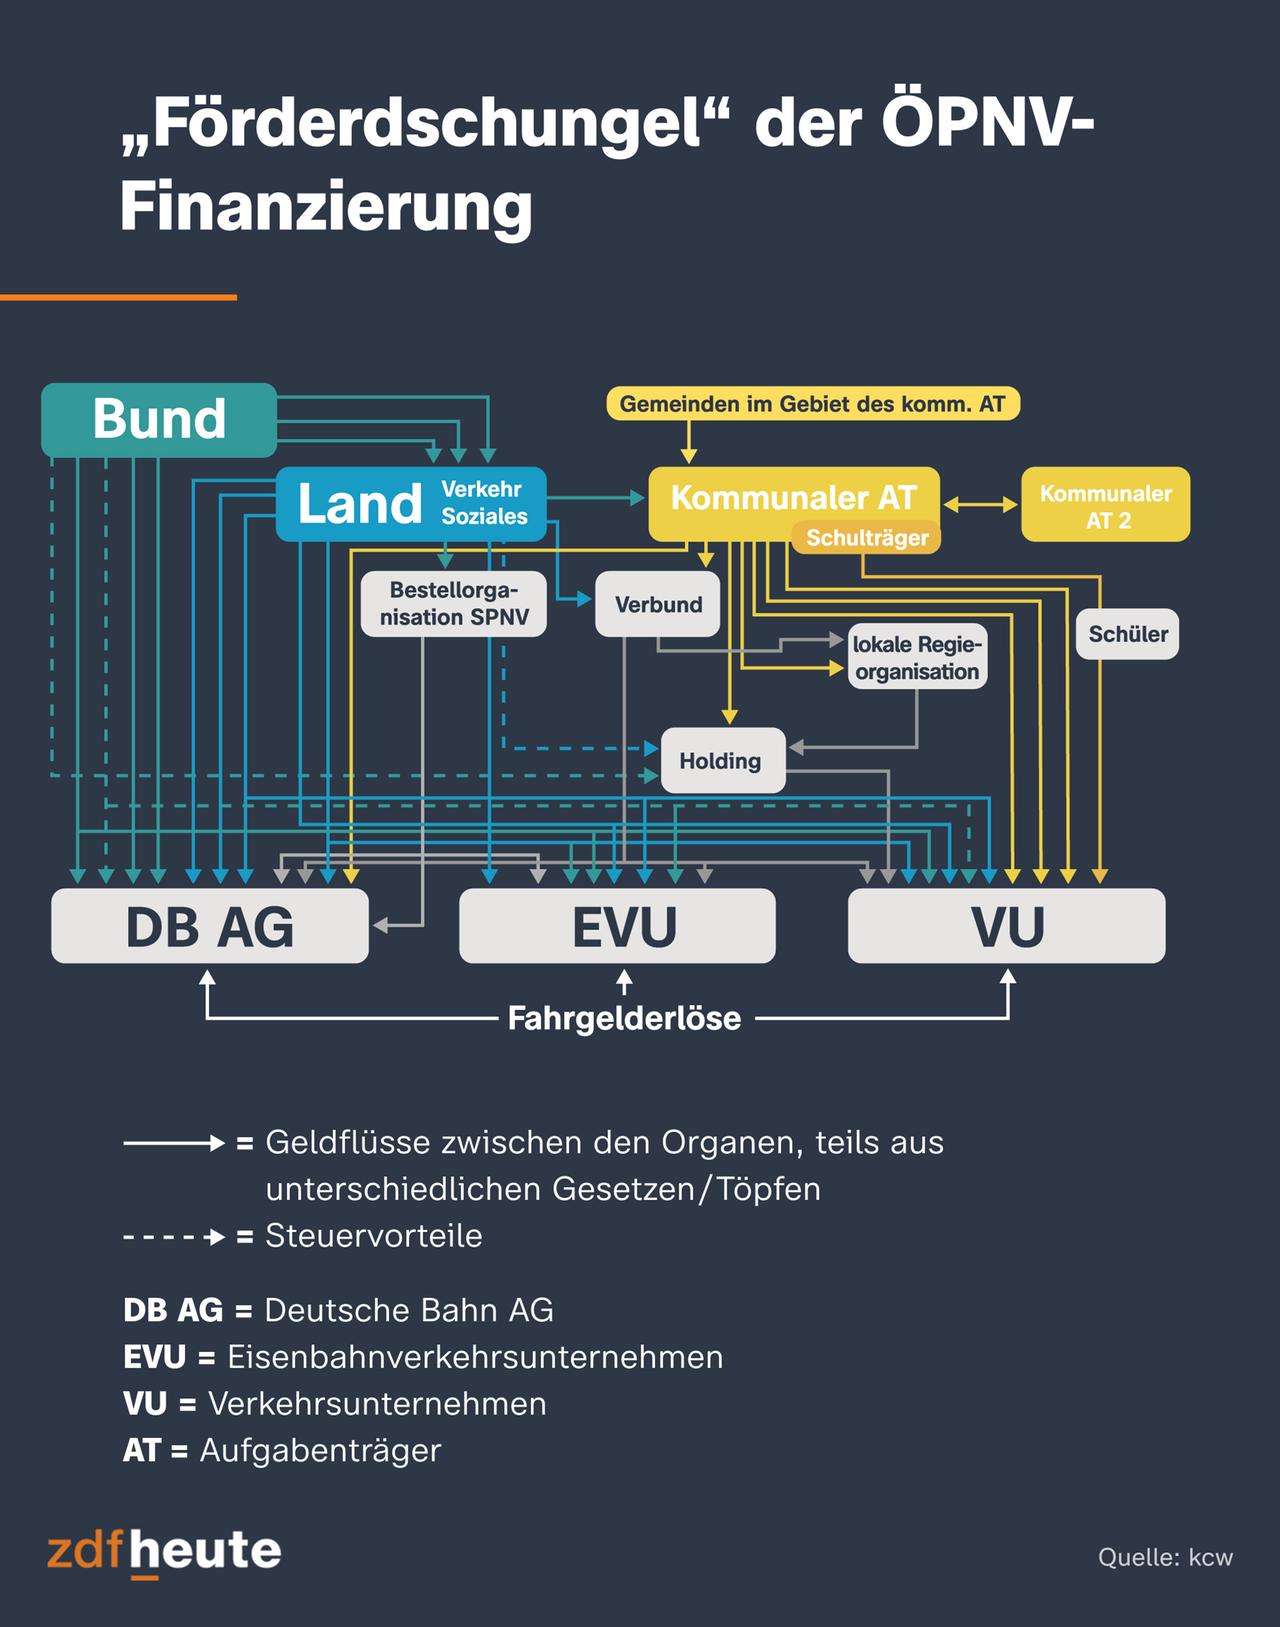 Die Infografik zeigt den "Förderdschungel" der ÖPNV-Finanzierung: Über diverse Gesetze und Töpfe bezuschussen Bund, Länder und Kommunen die Deutsche Bahn und die Verkehrsverbünde.